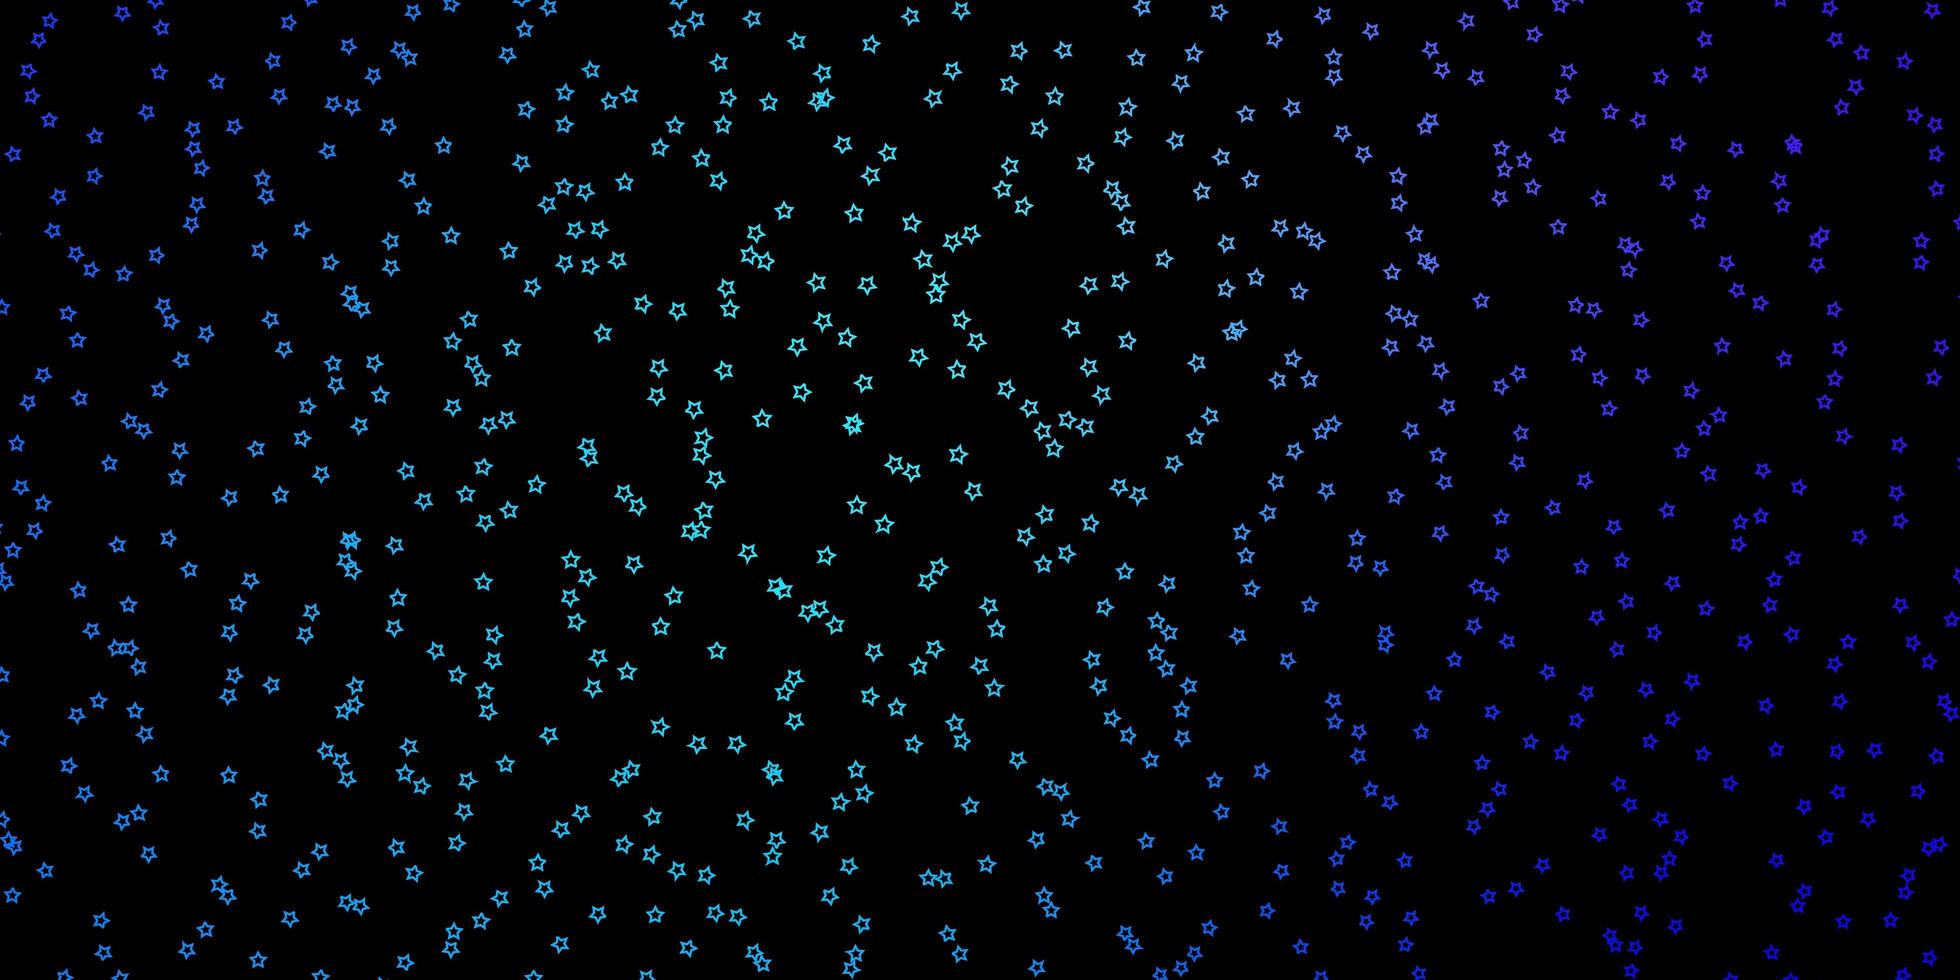 donkerroze, blauwe vectorachtergrond met kleine en grote sterren. vector